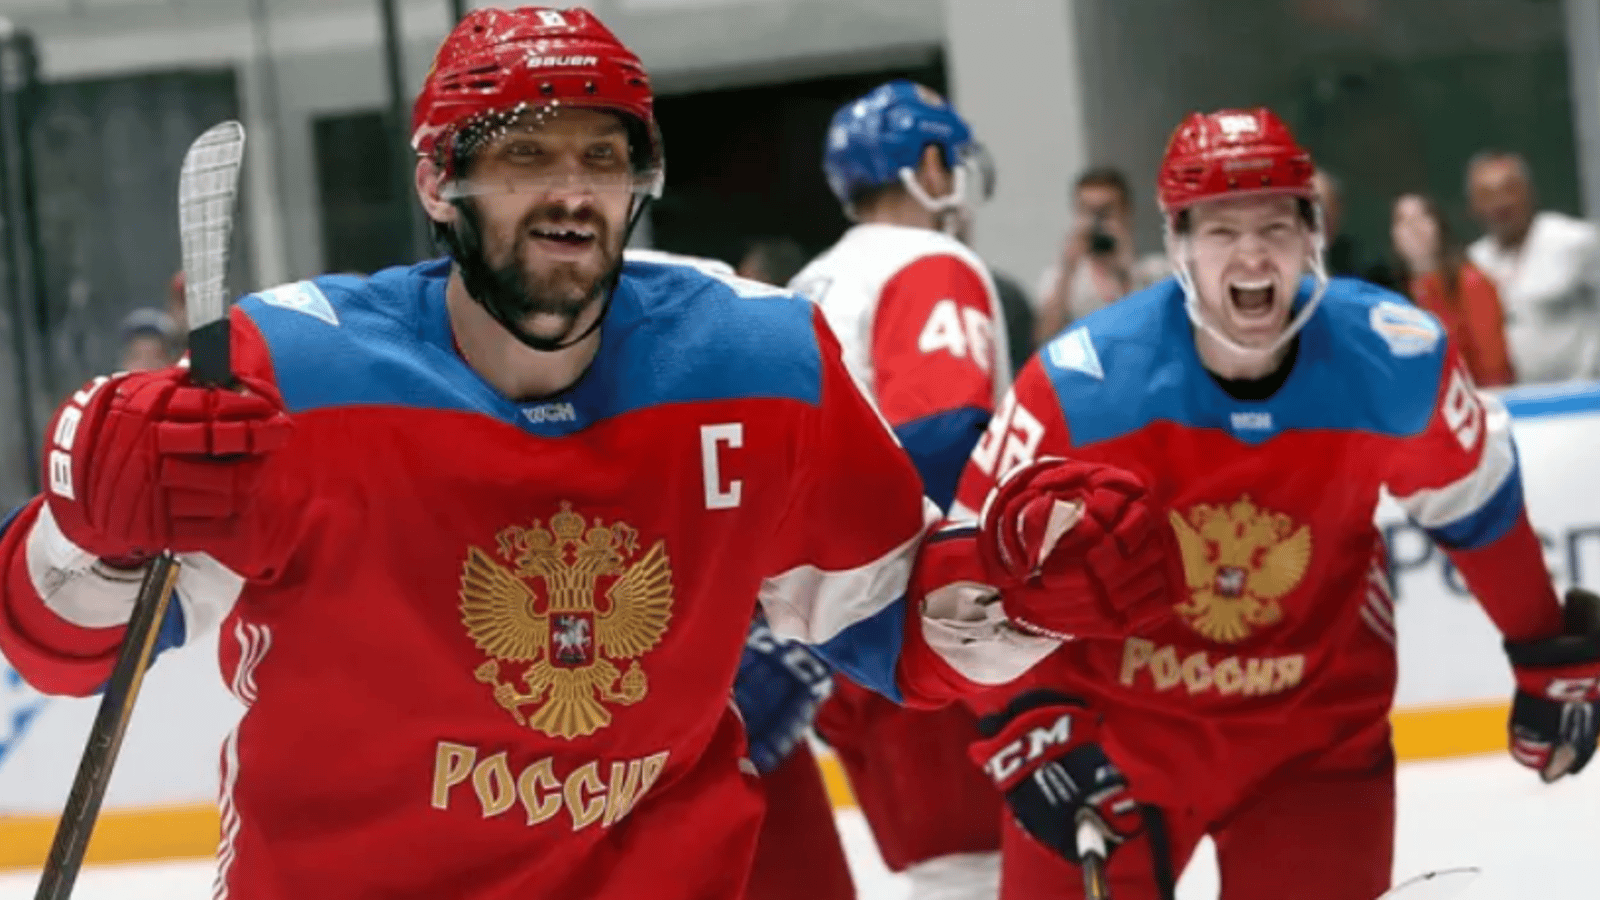 Voici à quoi pourrait ressembler l'équipe de Russie s'ils peuvent participer aux jeux de 2026